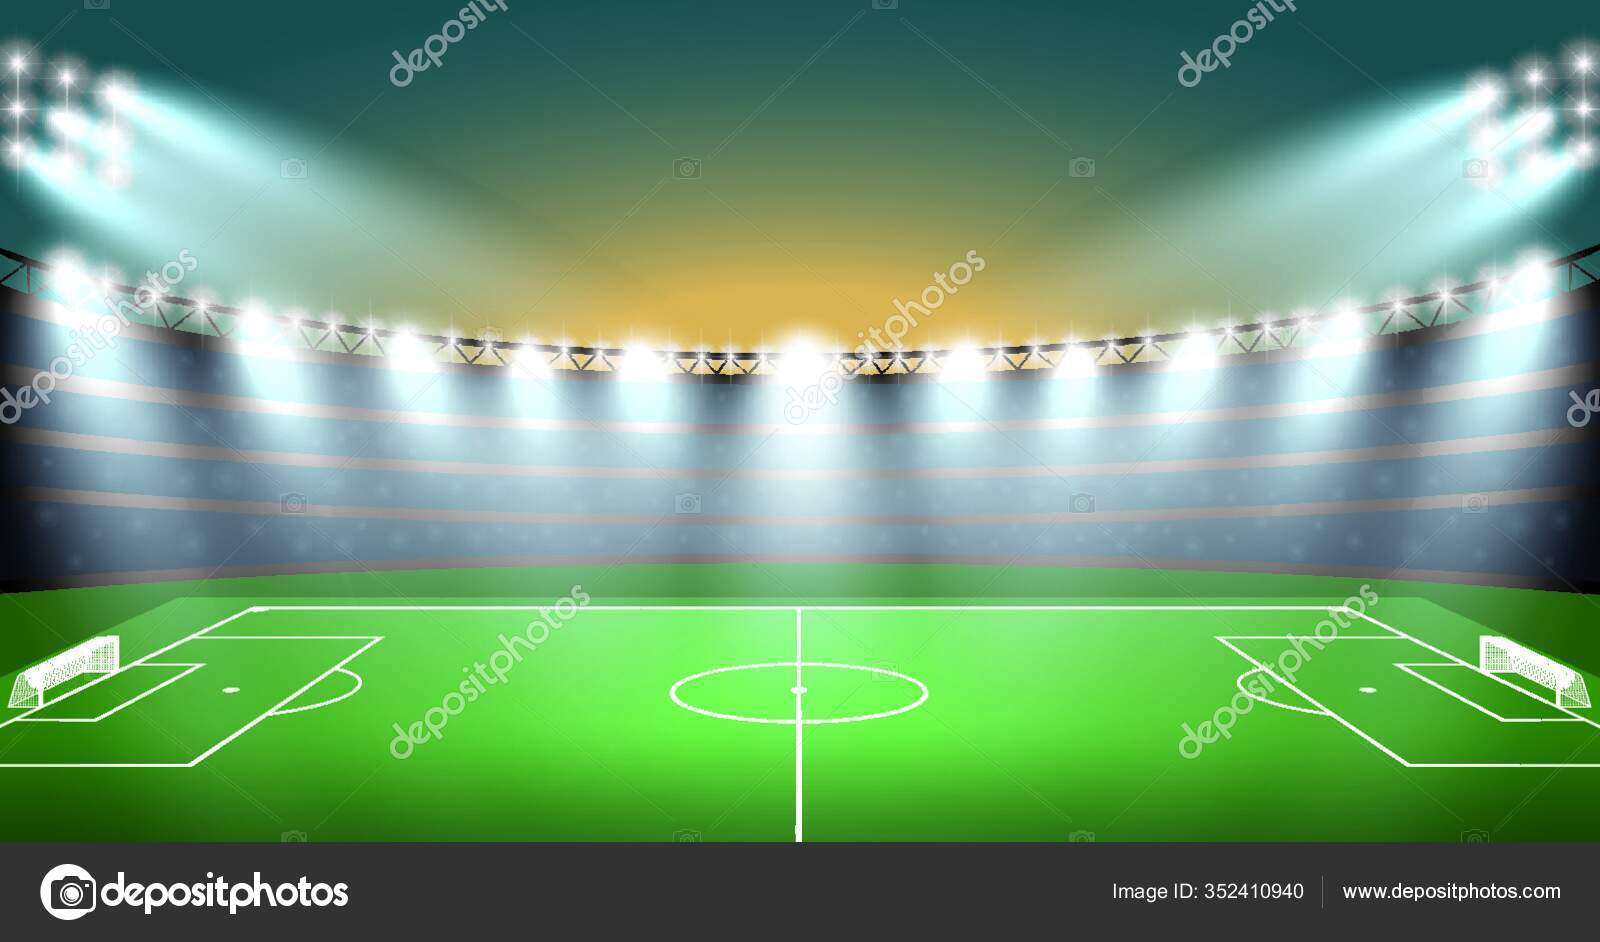 Vetores de As Pessoas Jogando Futebol No Campo De Ilustração De Vetores e  mais imagens de Brilhante - Luminosidade - iStock